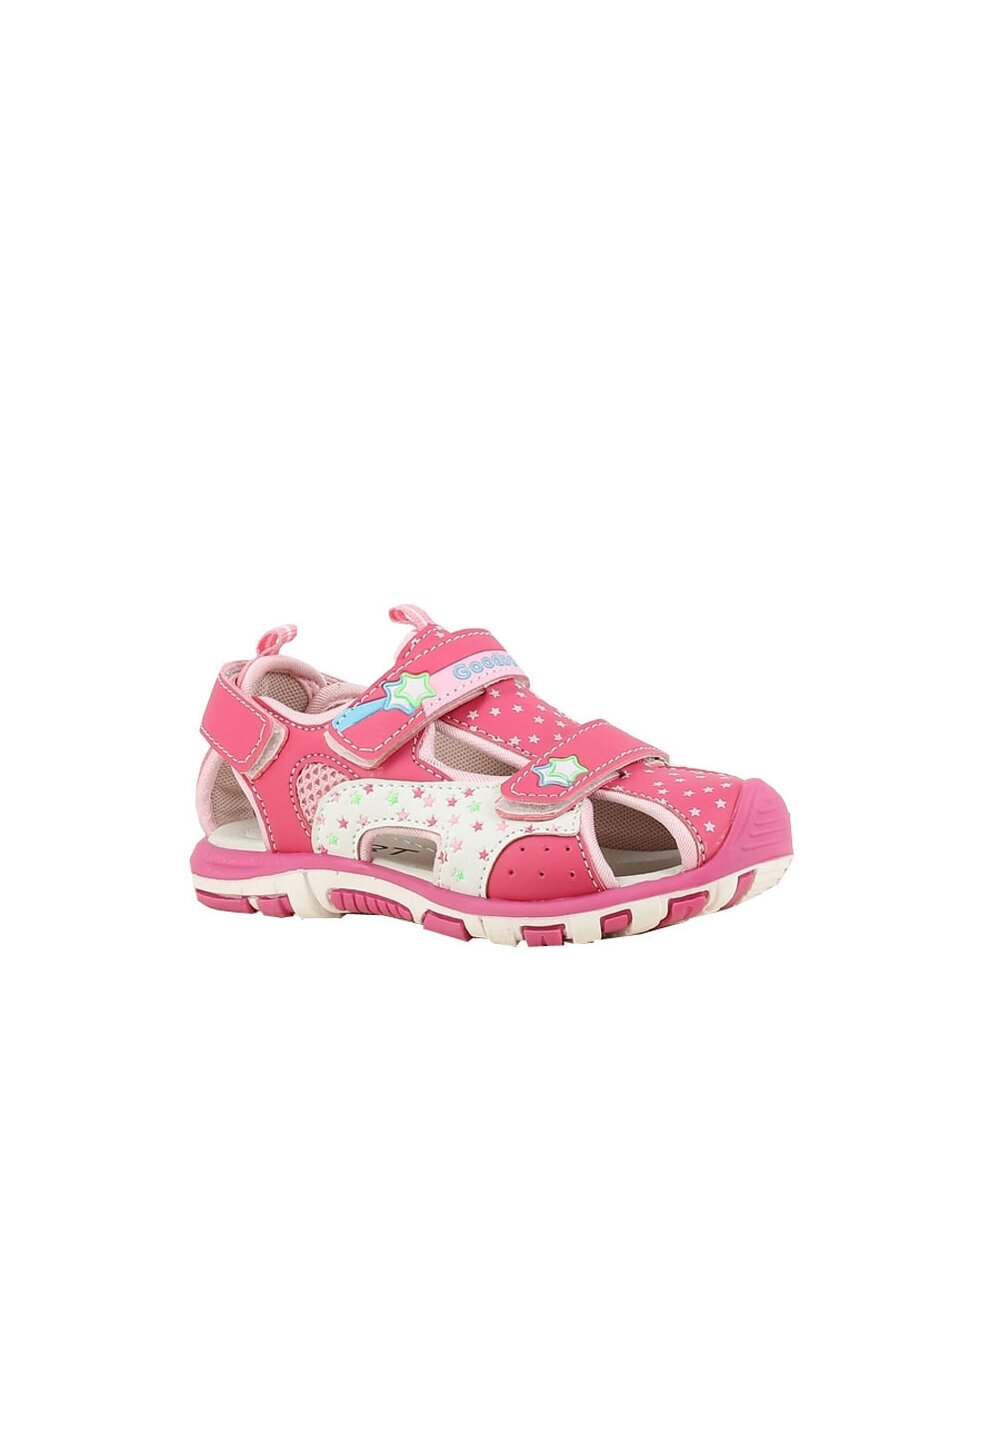 Sandale fete, cu scai din piele ecologica, roz inchis cu stele Prichindel imagine noua